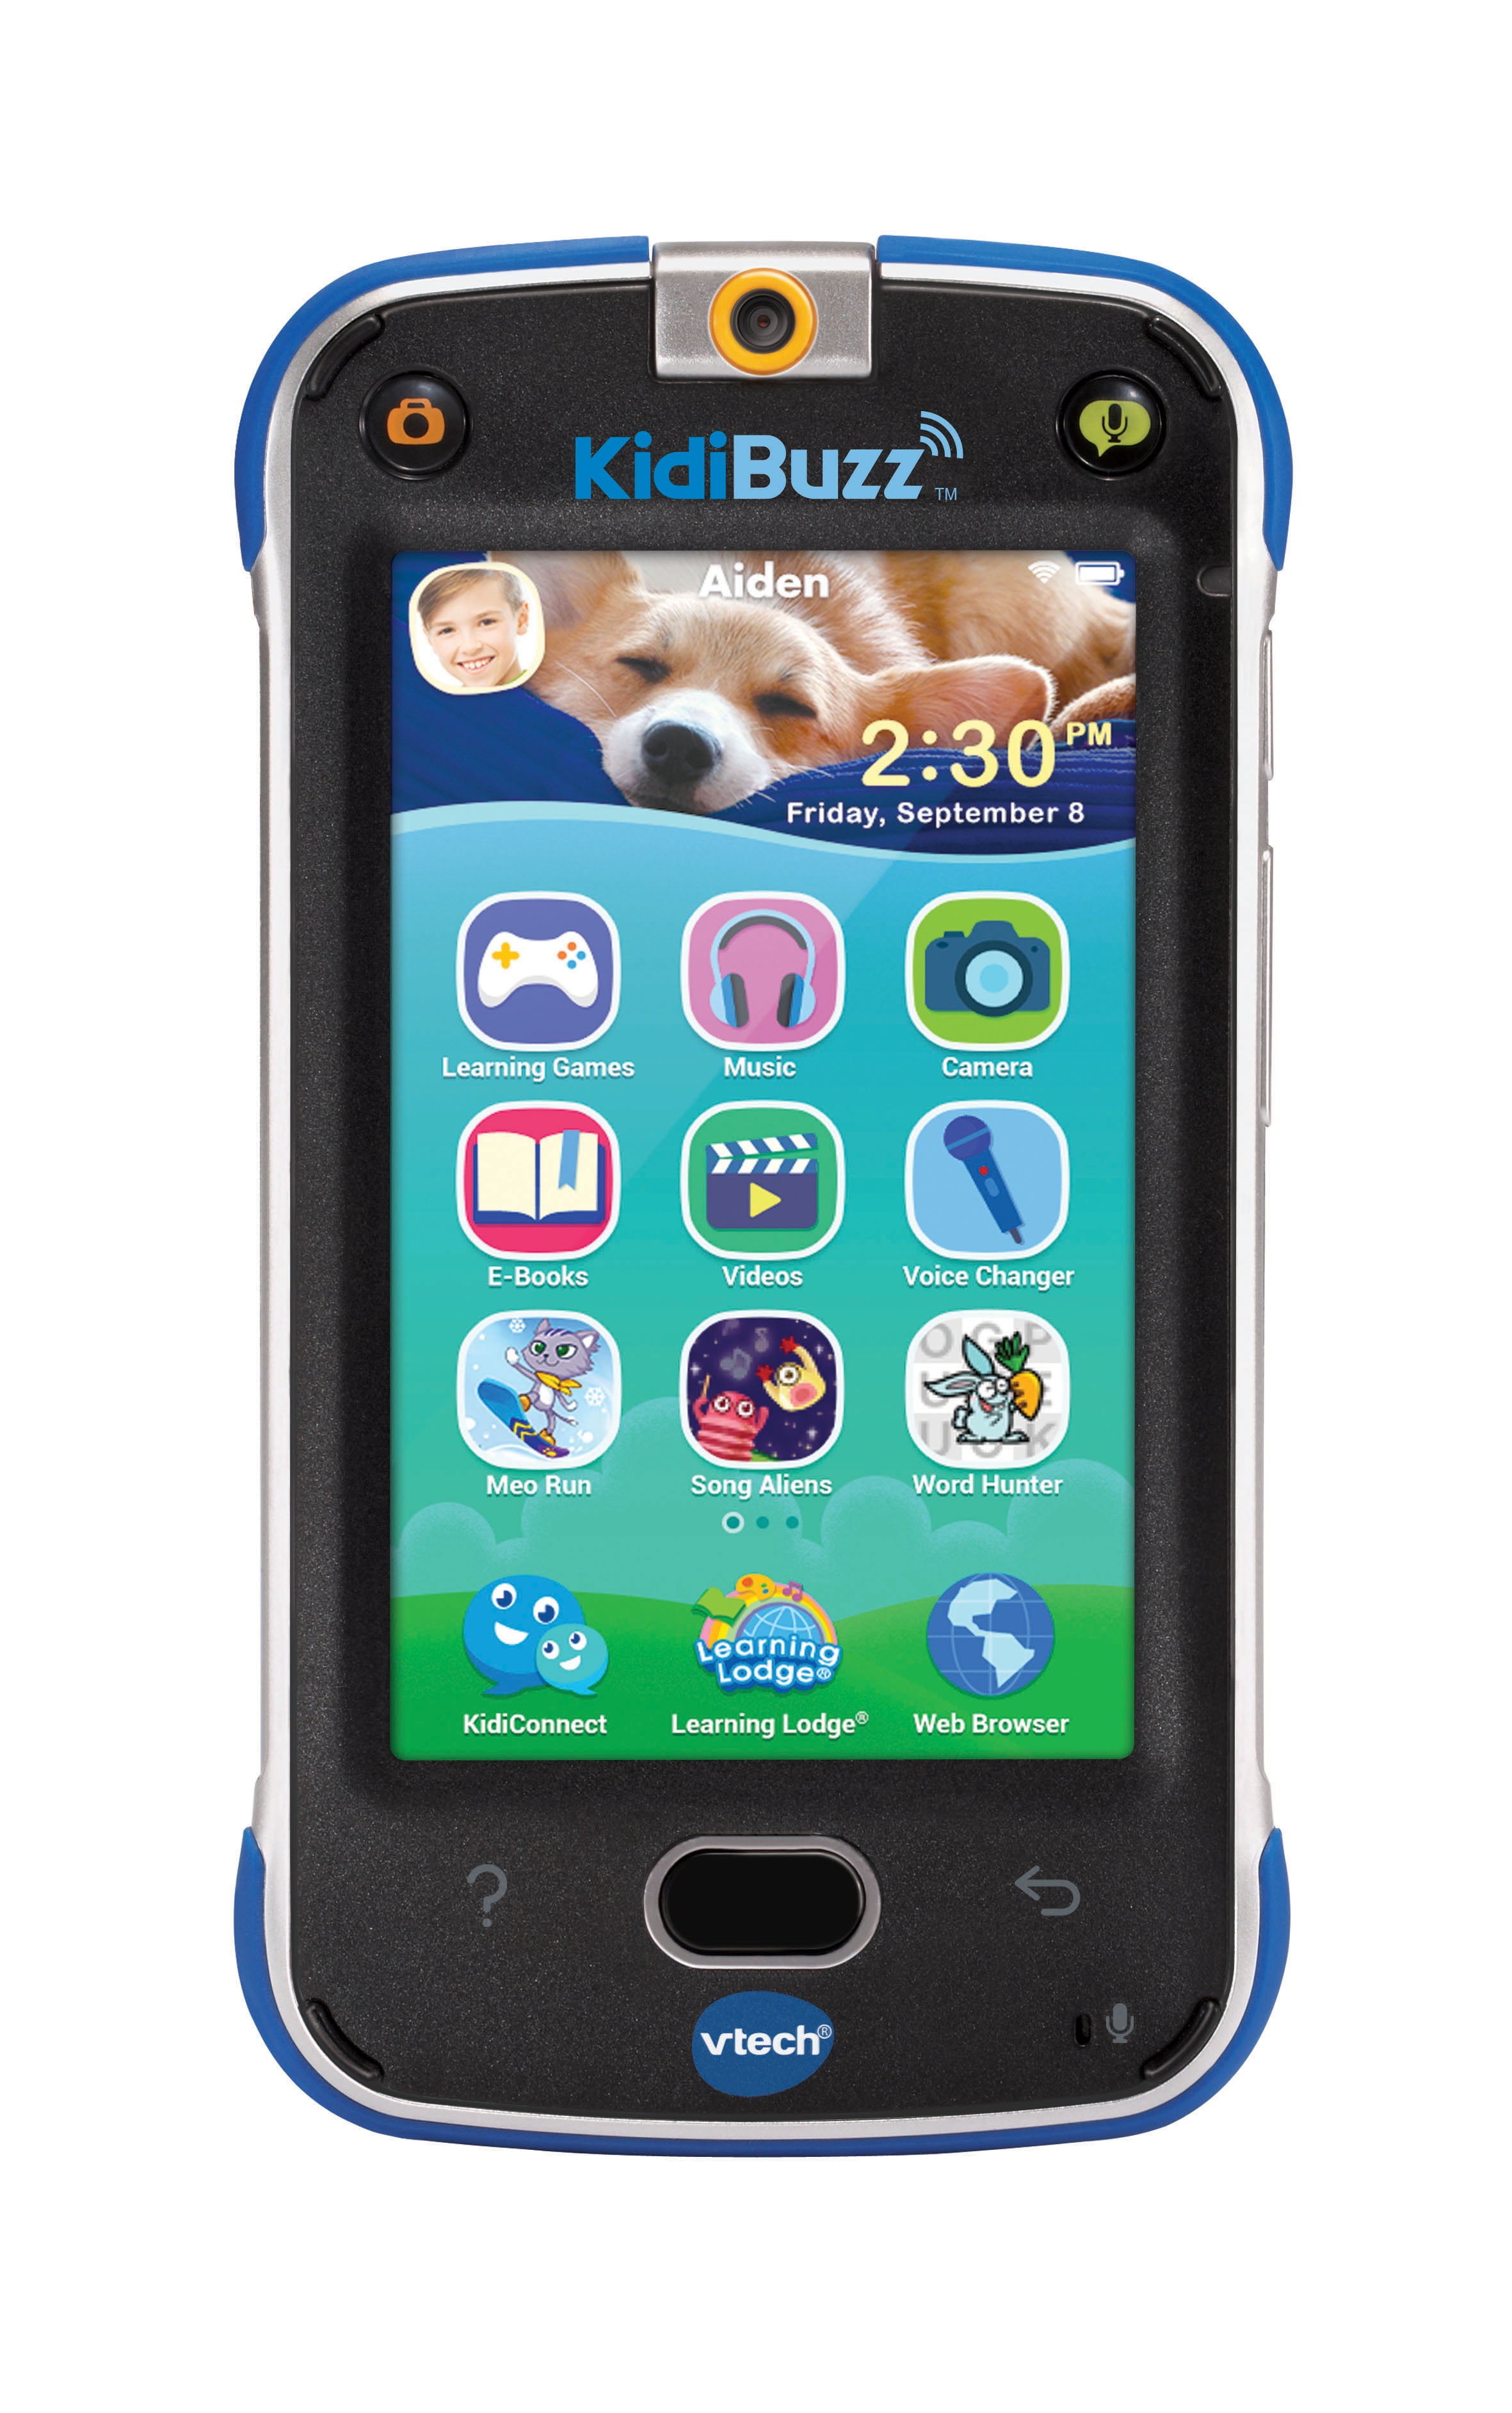 New VTech Kidibuzz Blue Hand Held Black Smart Device Toy Phone For Kids Htf 